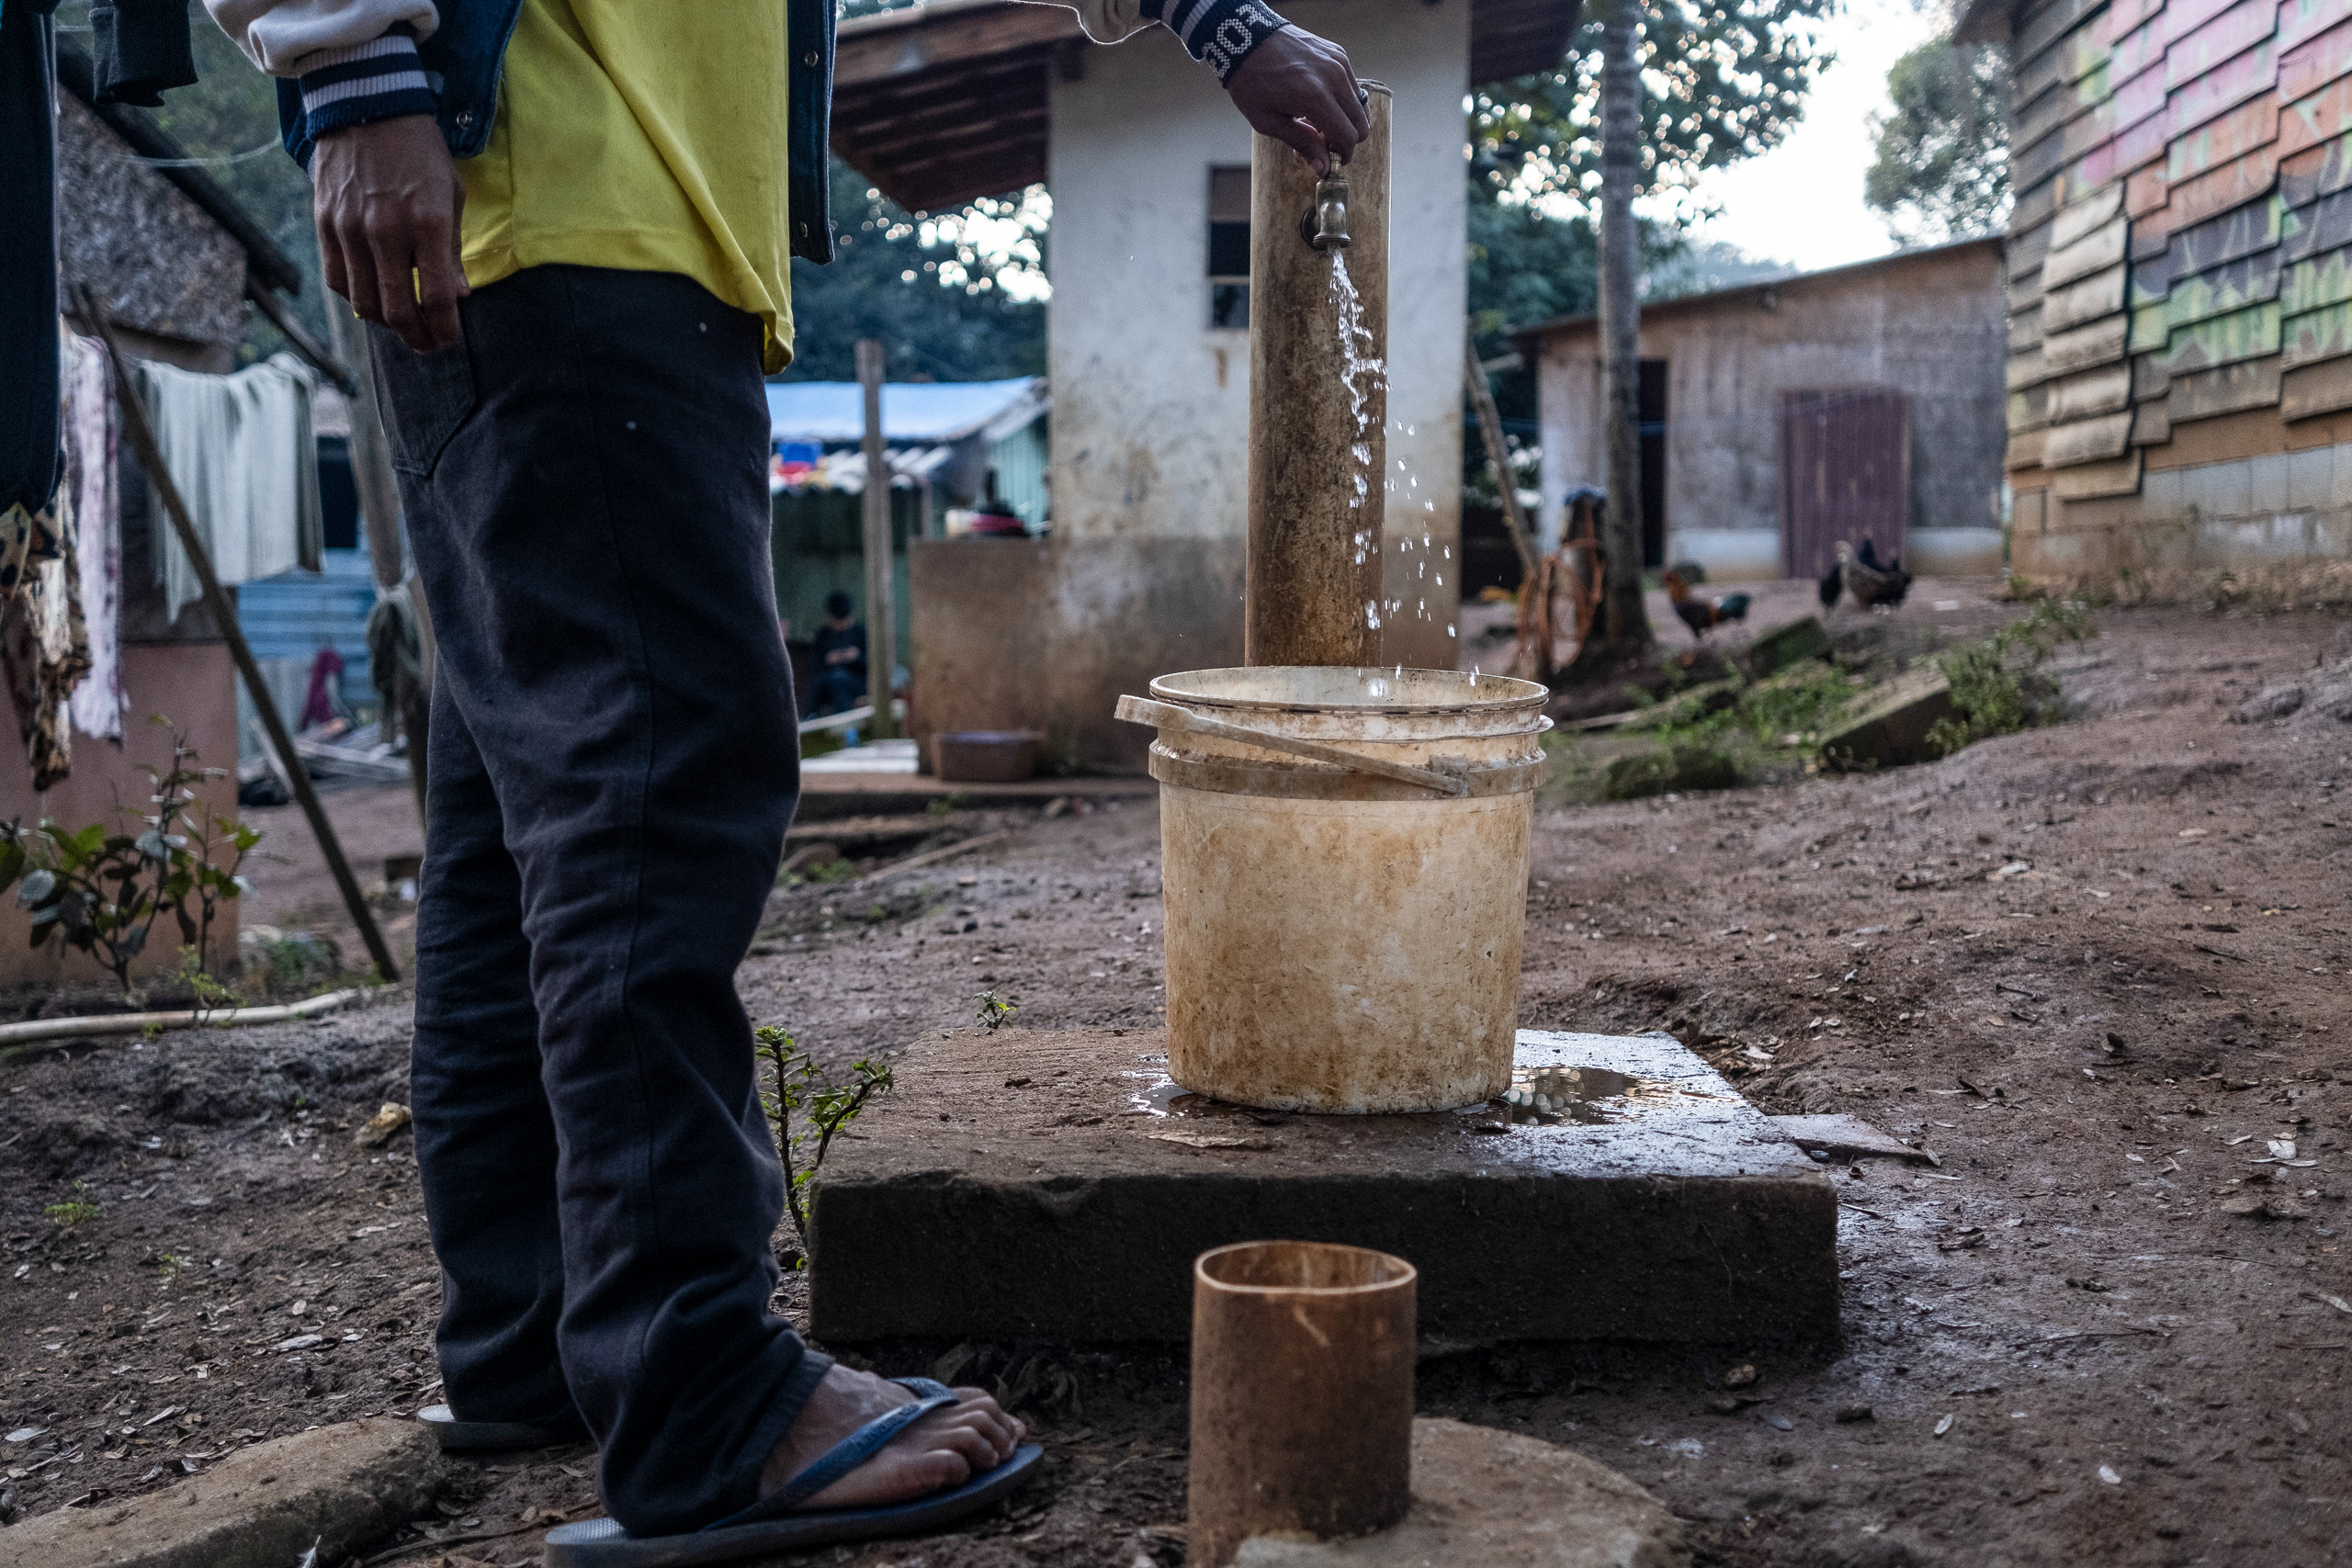 Morador da aldeia enche um balde d’água para tomar banho